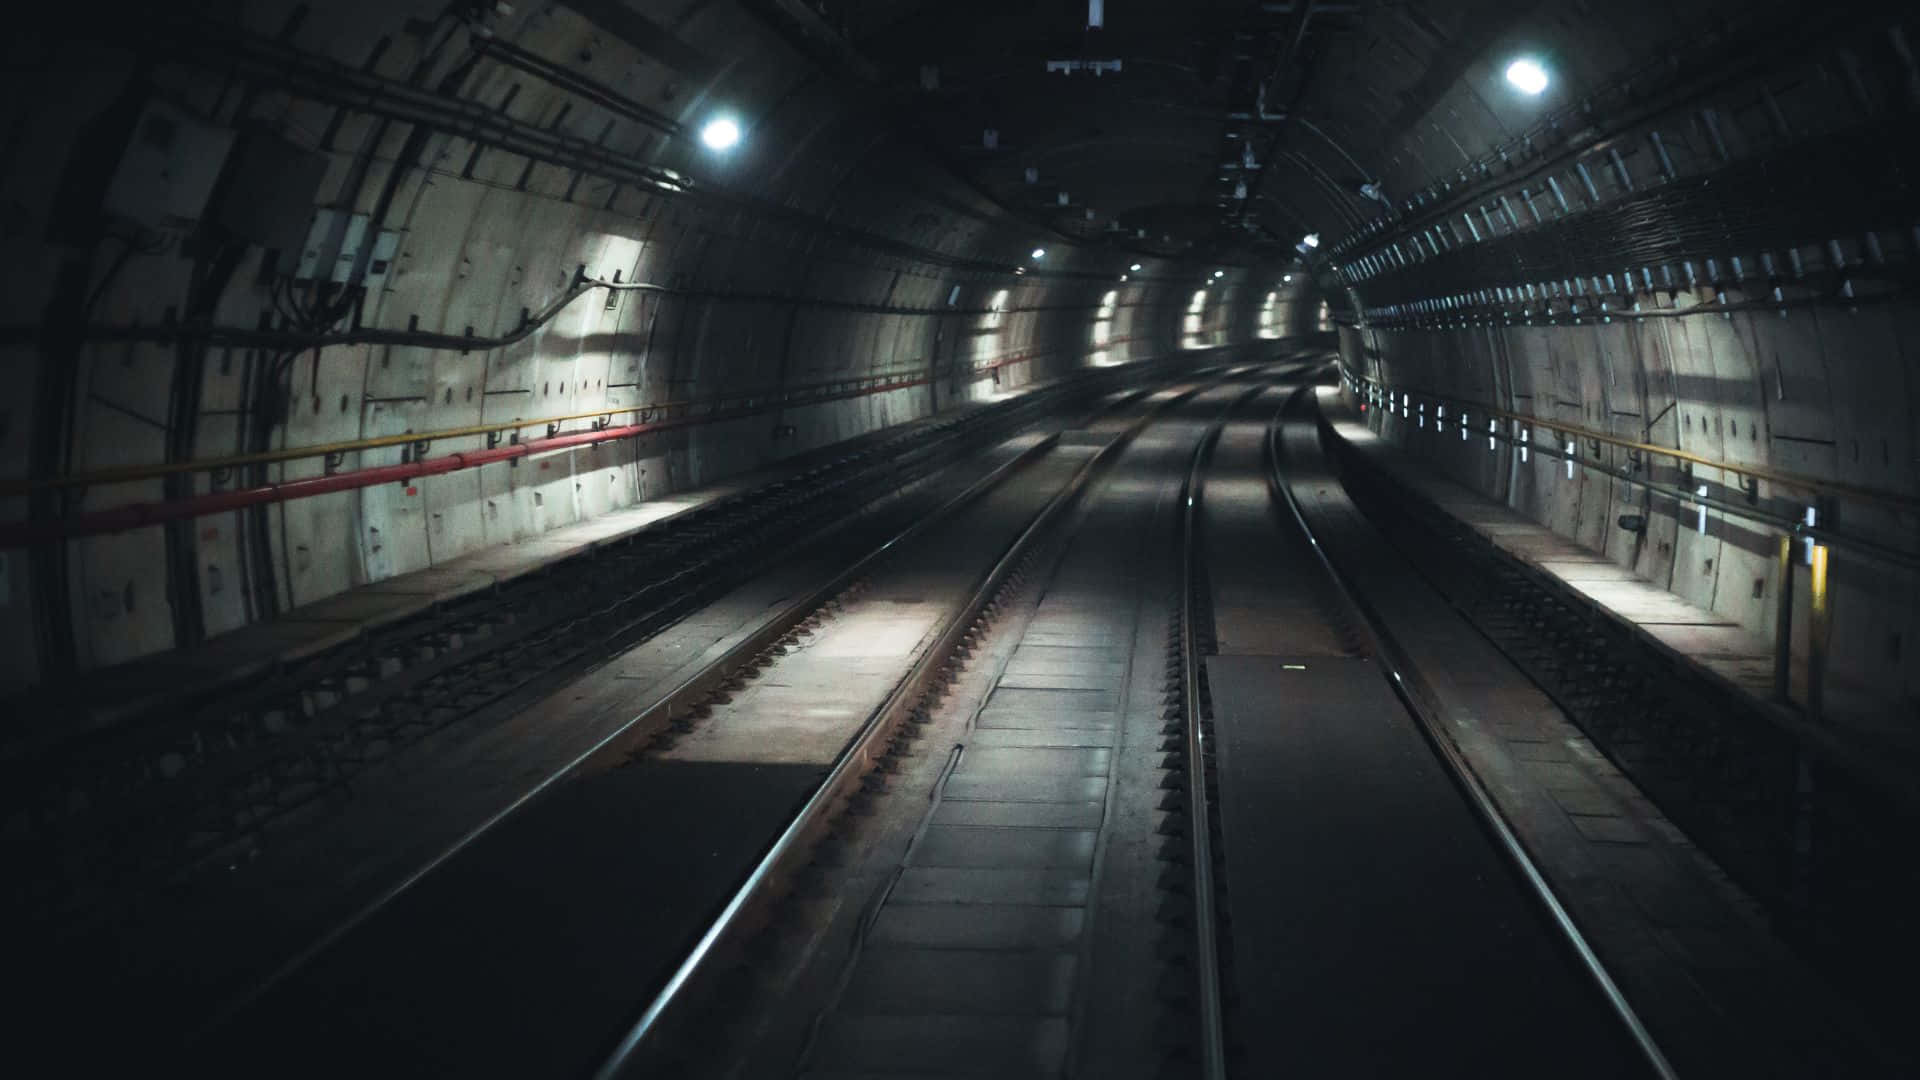 Underground subway station illuminated